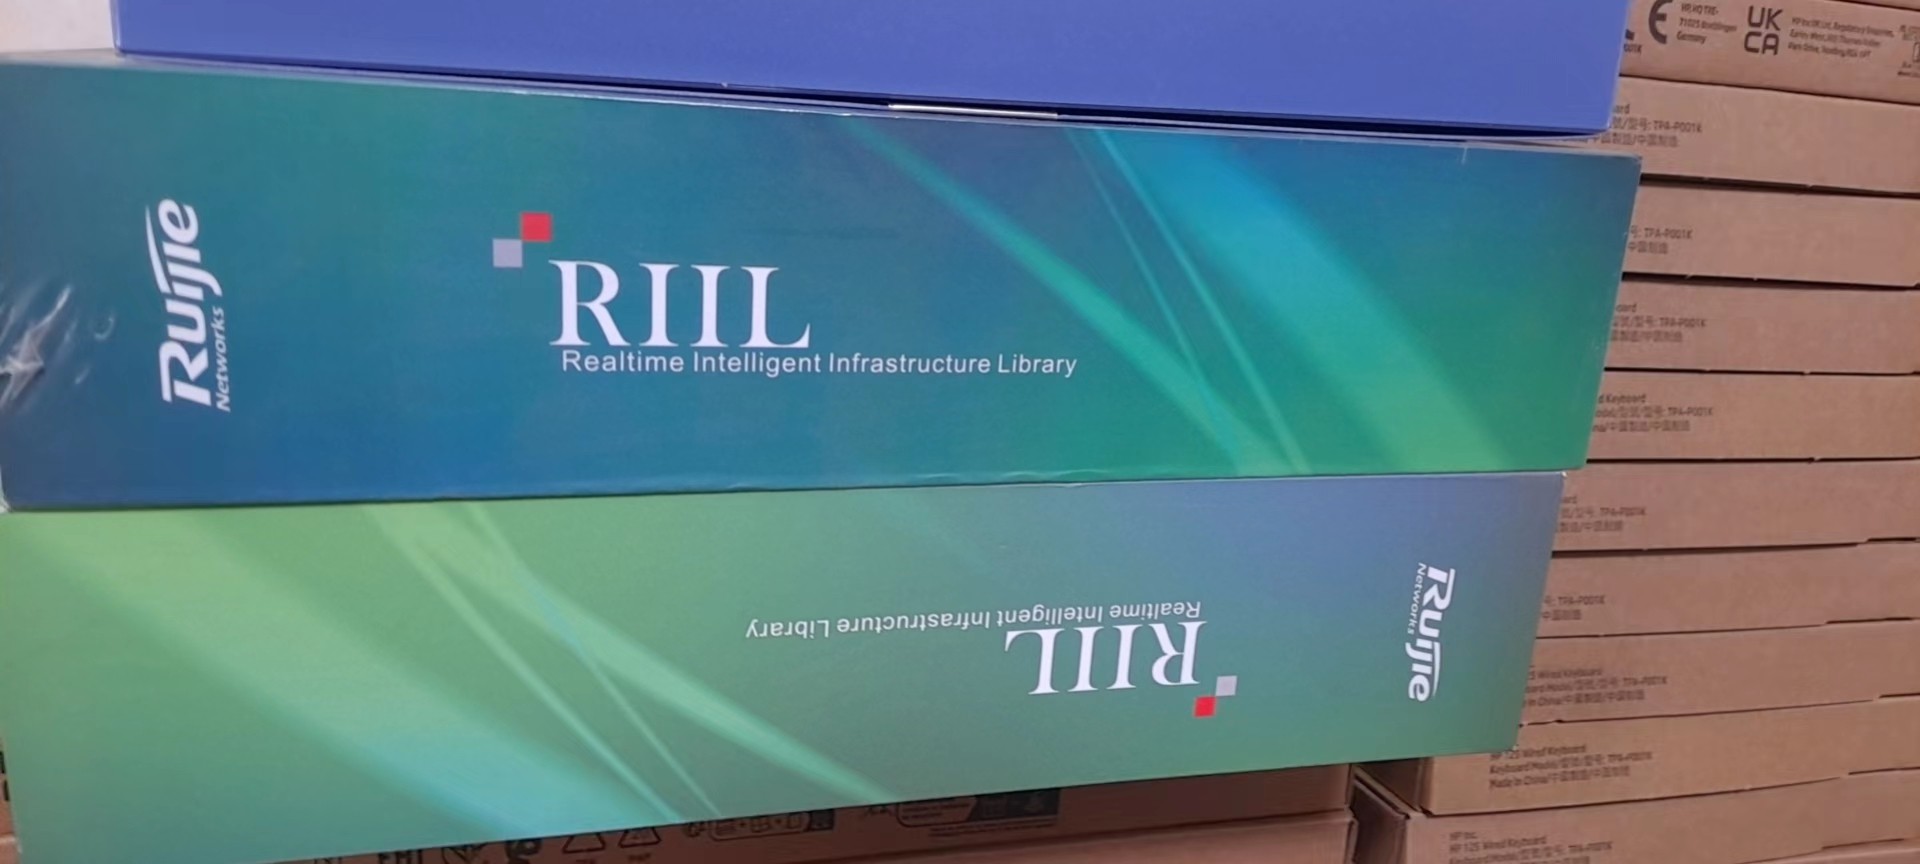 议价锐捷运维管理系统RG-RiiL6. X，全新未开封。有多种组议价